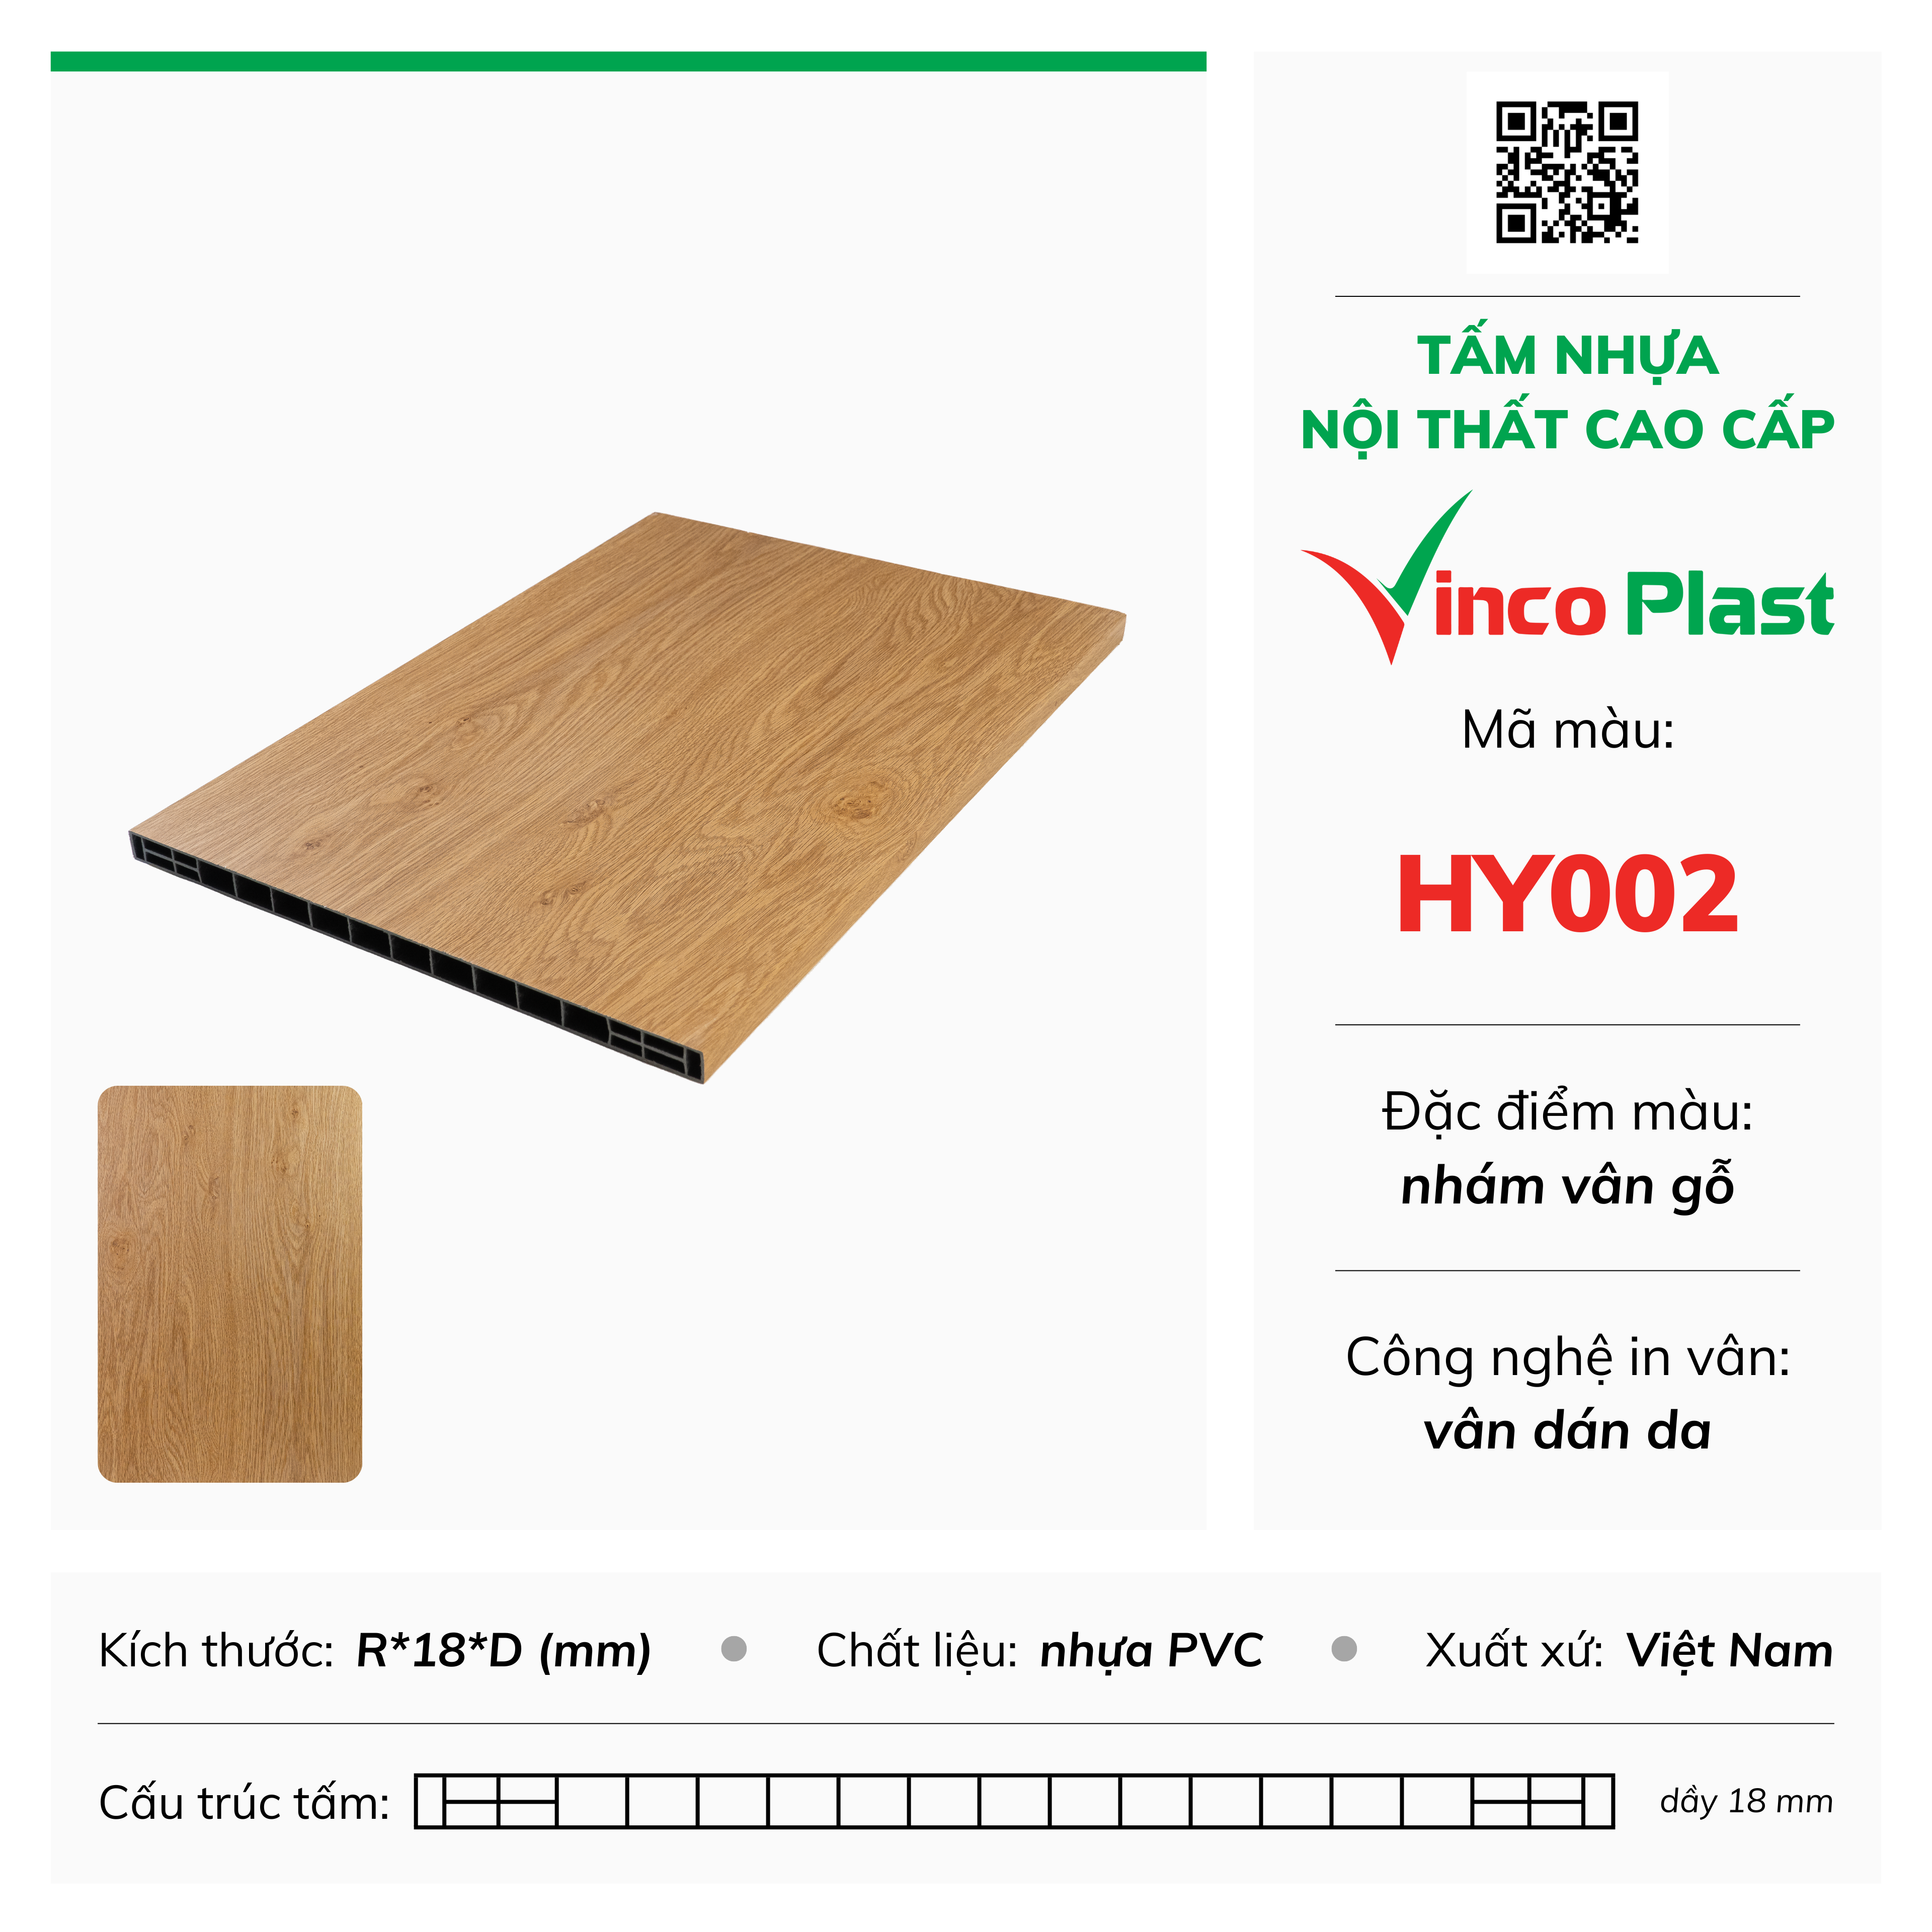 Tấm nhựa nội thất cao cấp Vincoplast màu HY002 (2)